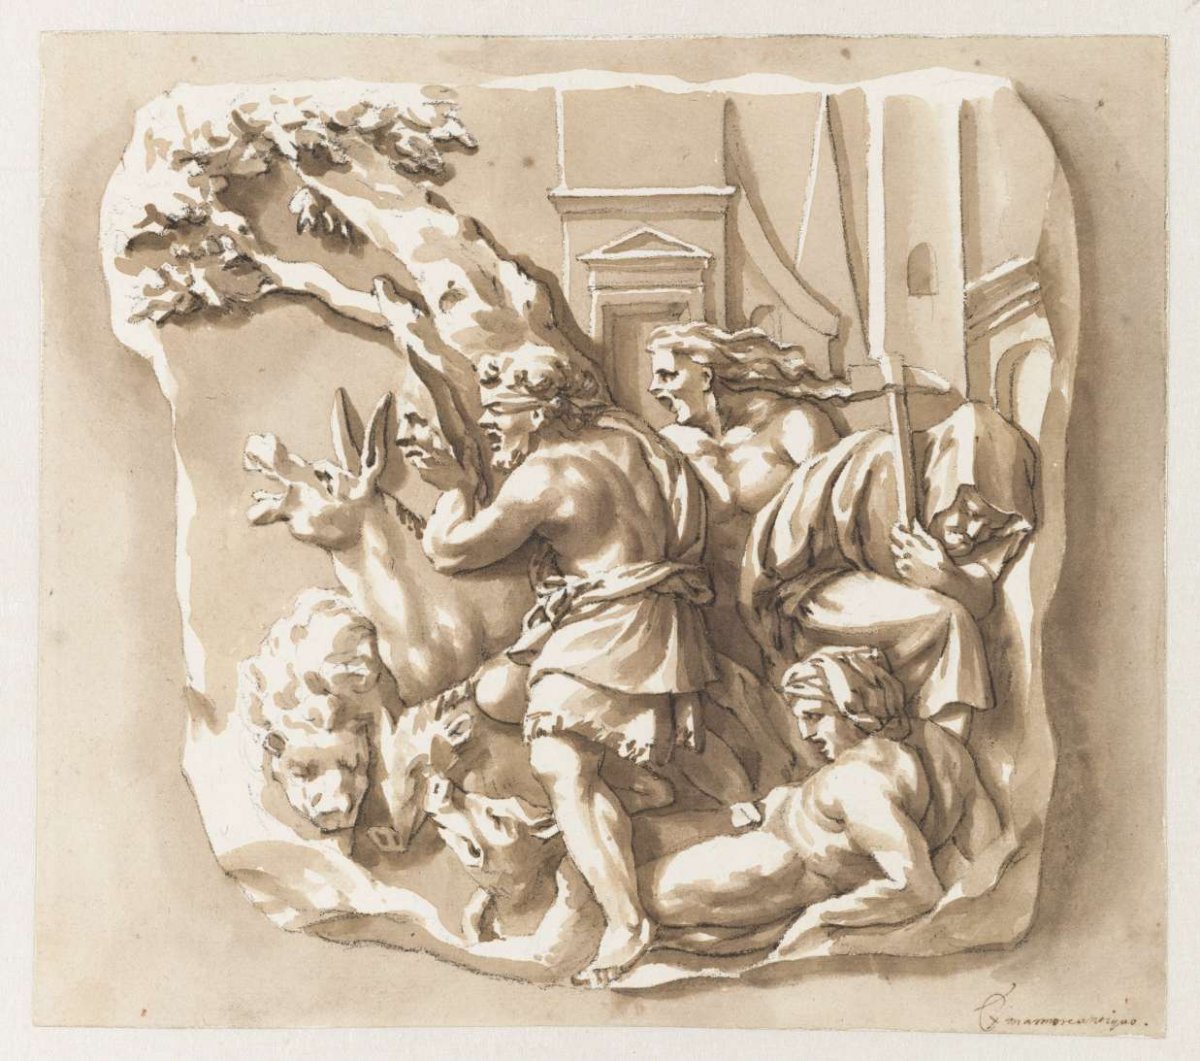 People and animals around a tree, Jan de Bisschop, 1648 - 1671